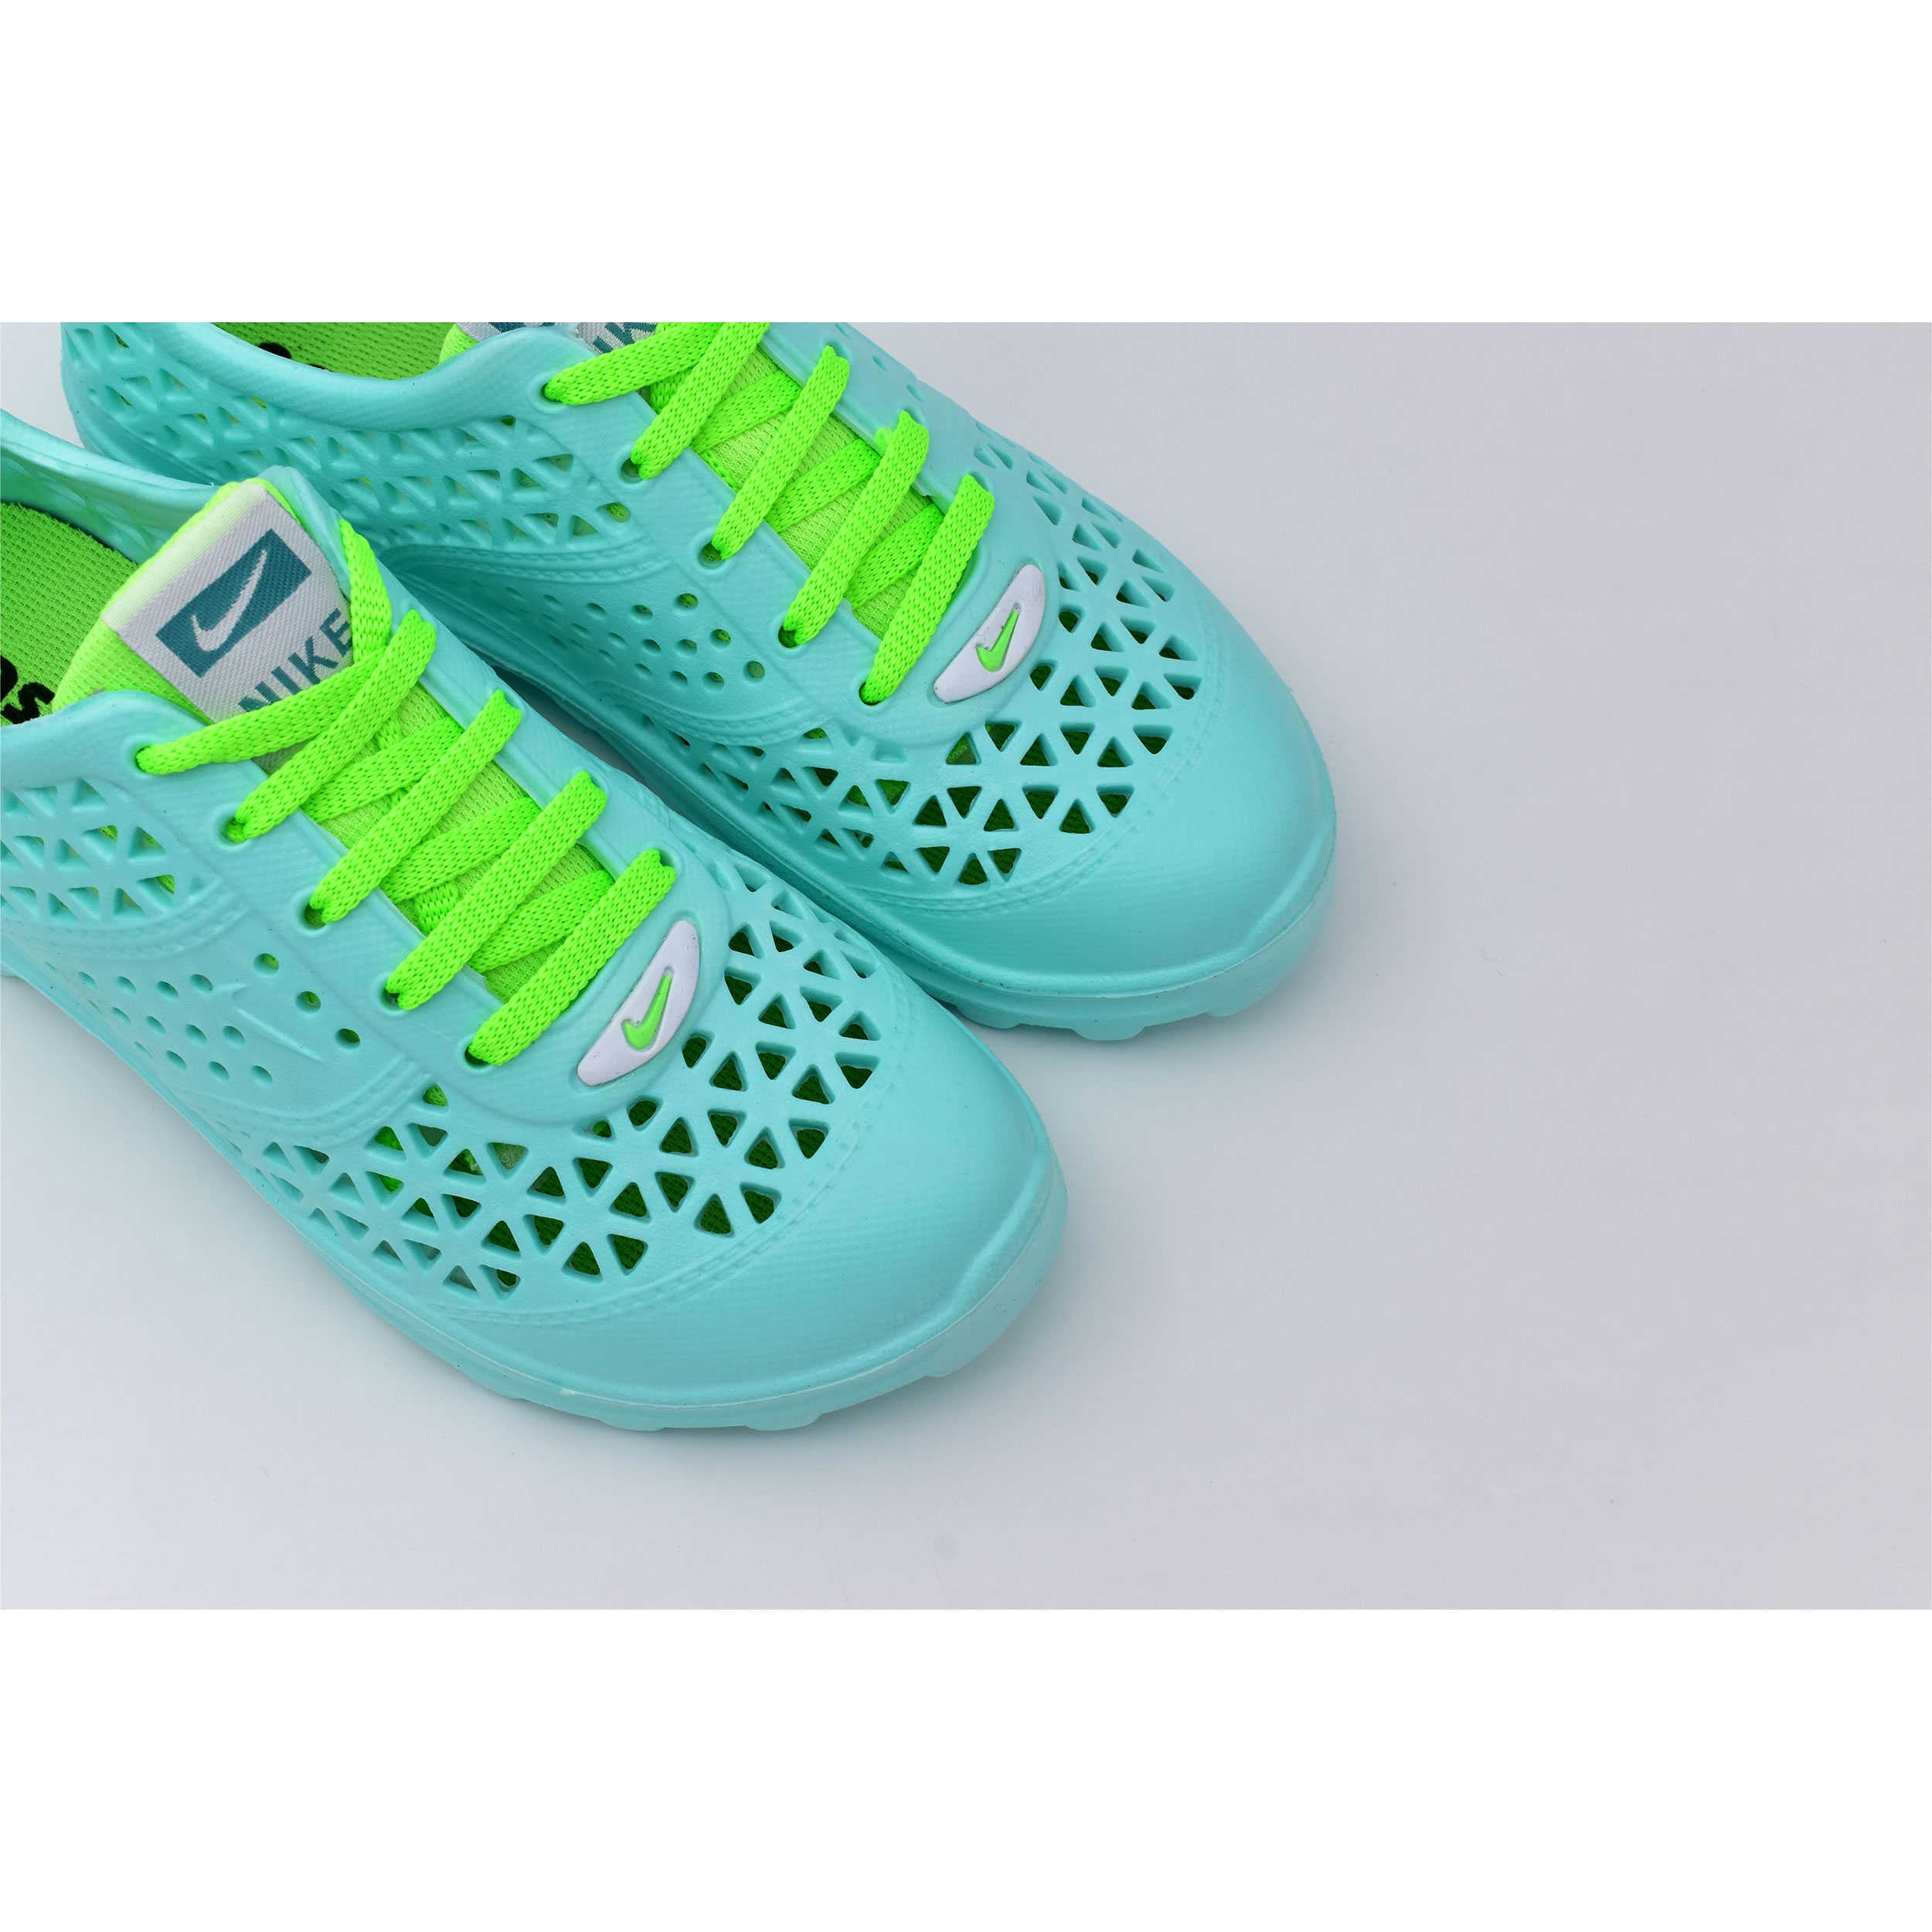  کفش ورزش های آبی زنانه نسیم مدل مرجان کد 8714 -  - 2